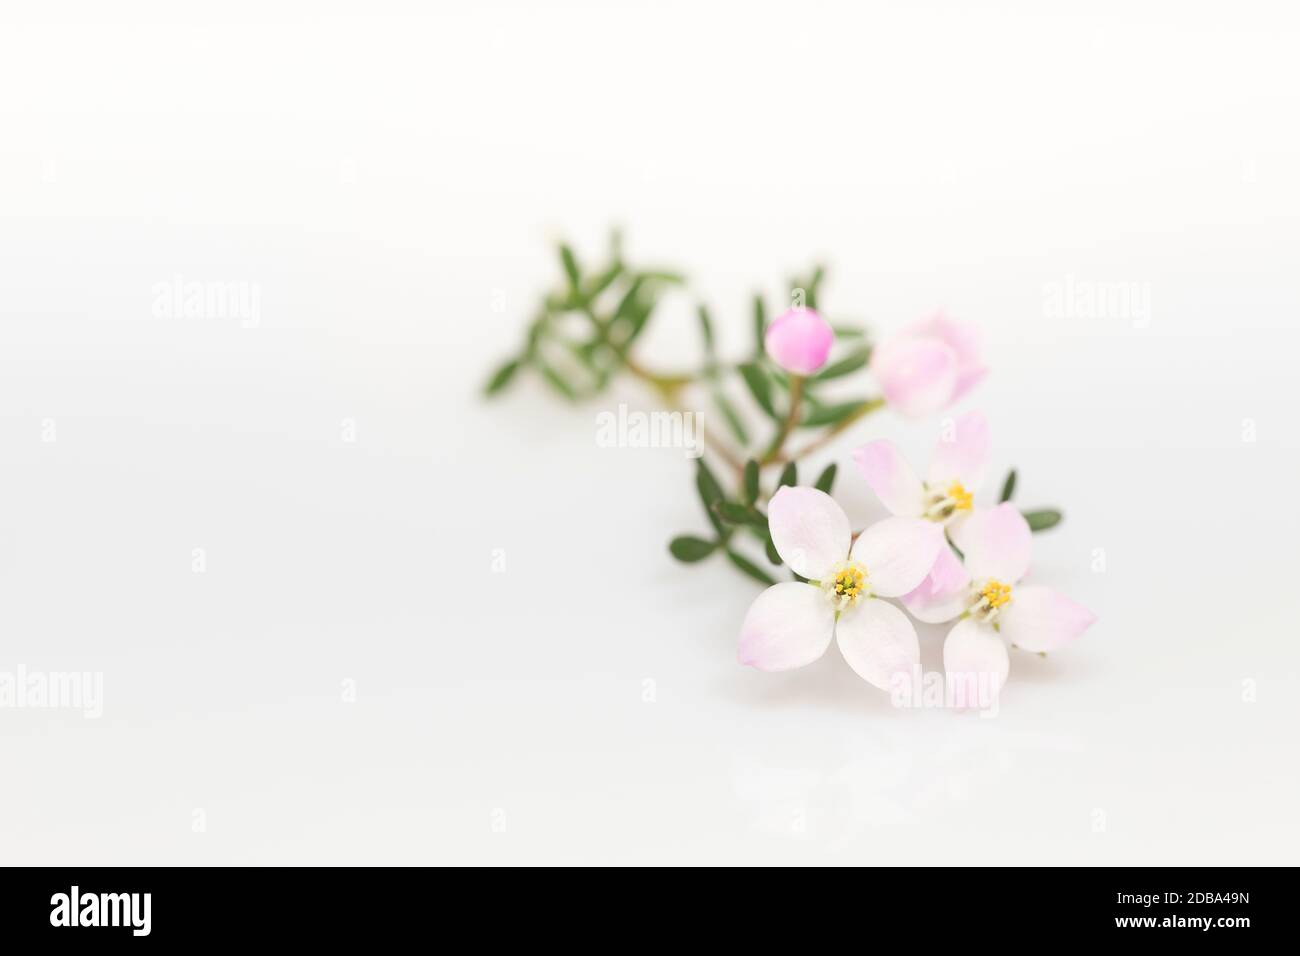 Boronia anemonifolia fleur sur fond clair Banque D'Images